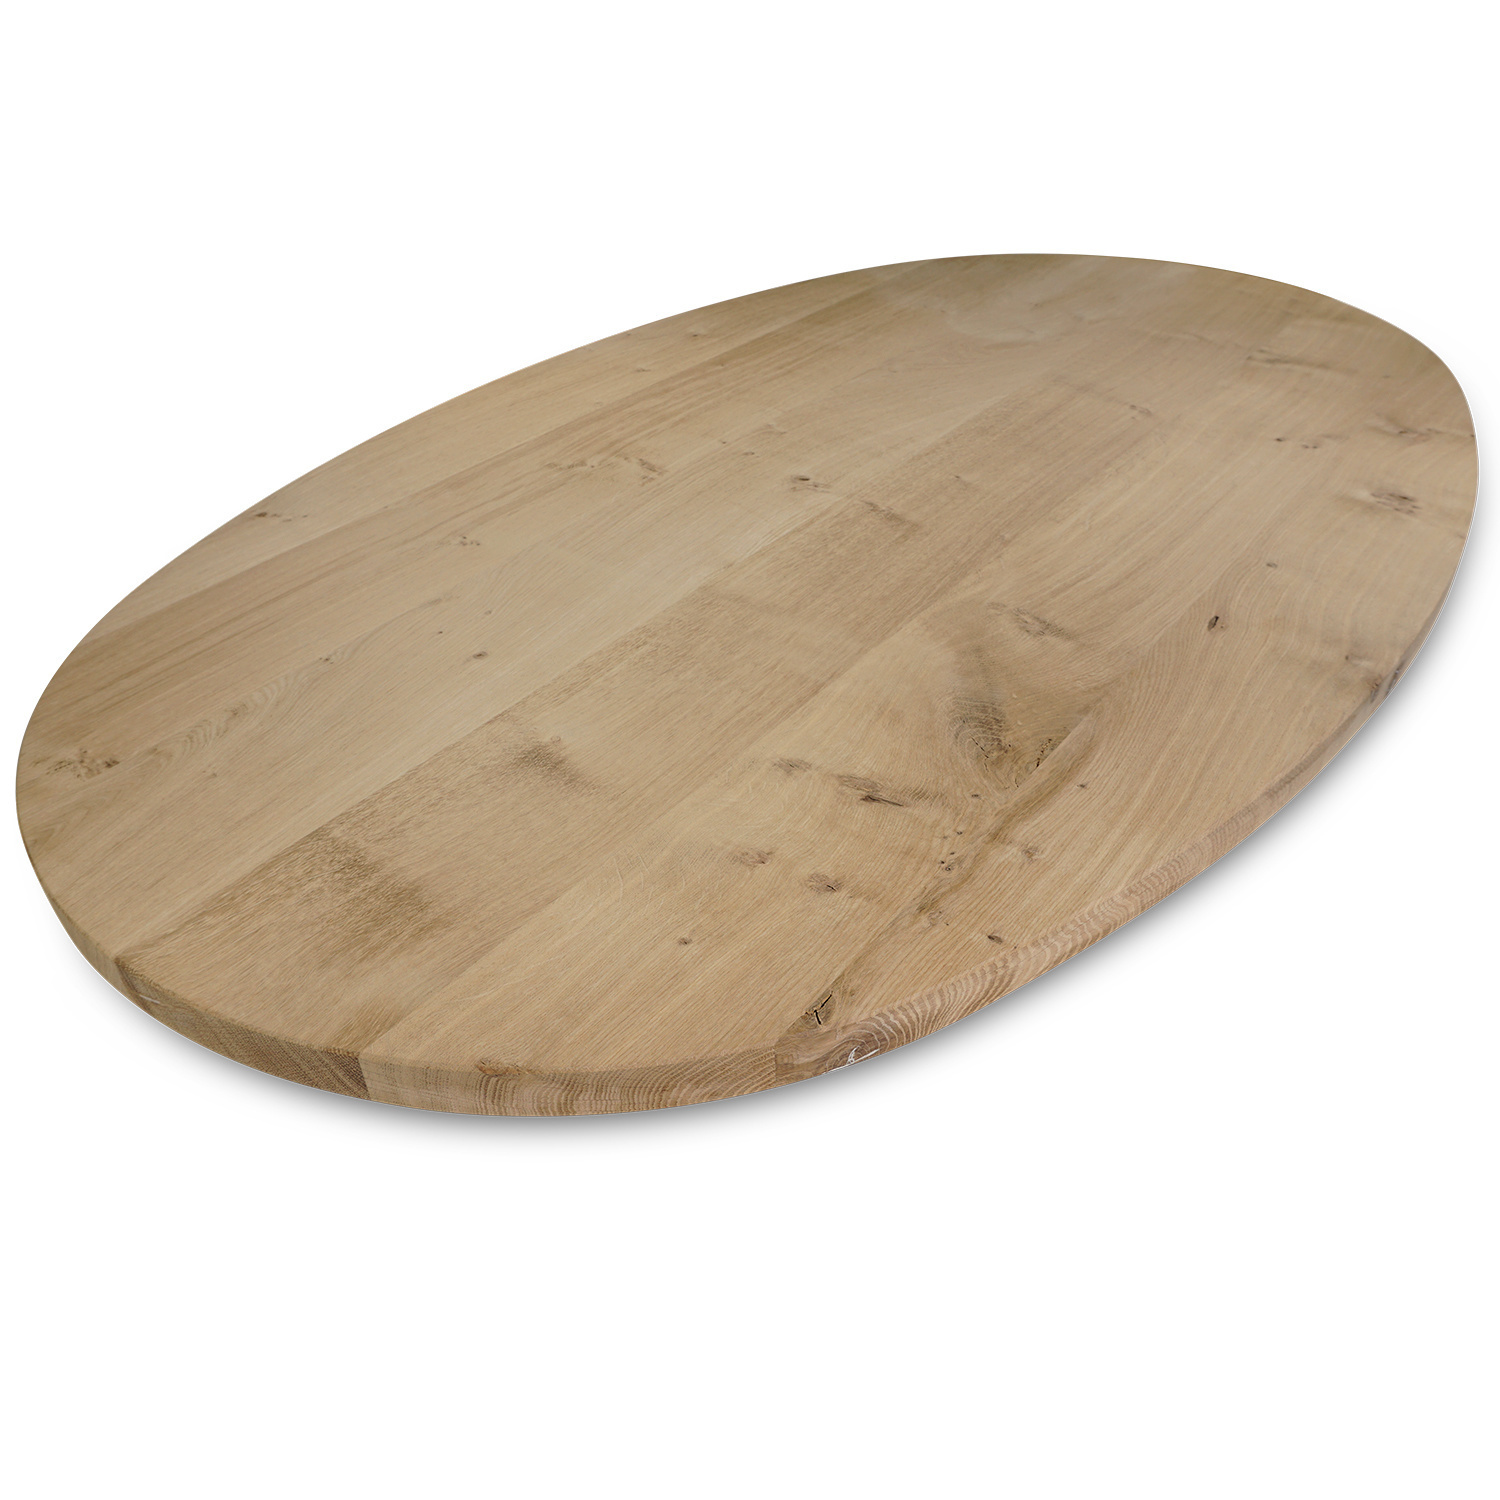  Tischplatte Eiche oval - 2 cm dick - Eichenholz Rustikal - Ellipse Eiche Tischplatte massiv - HF 8-12%